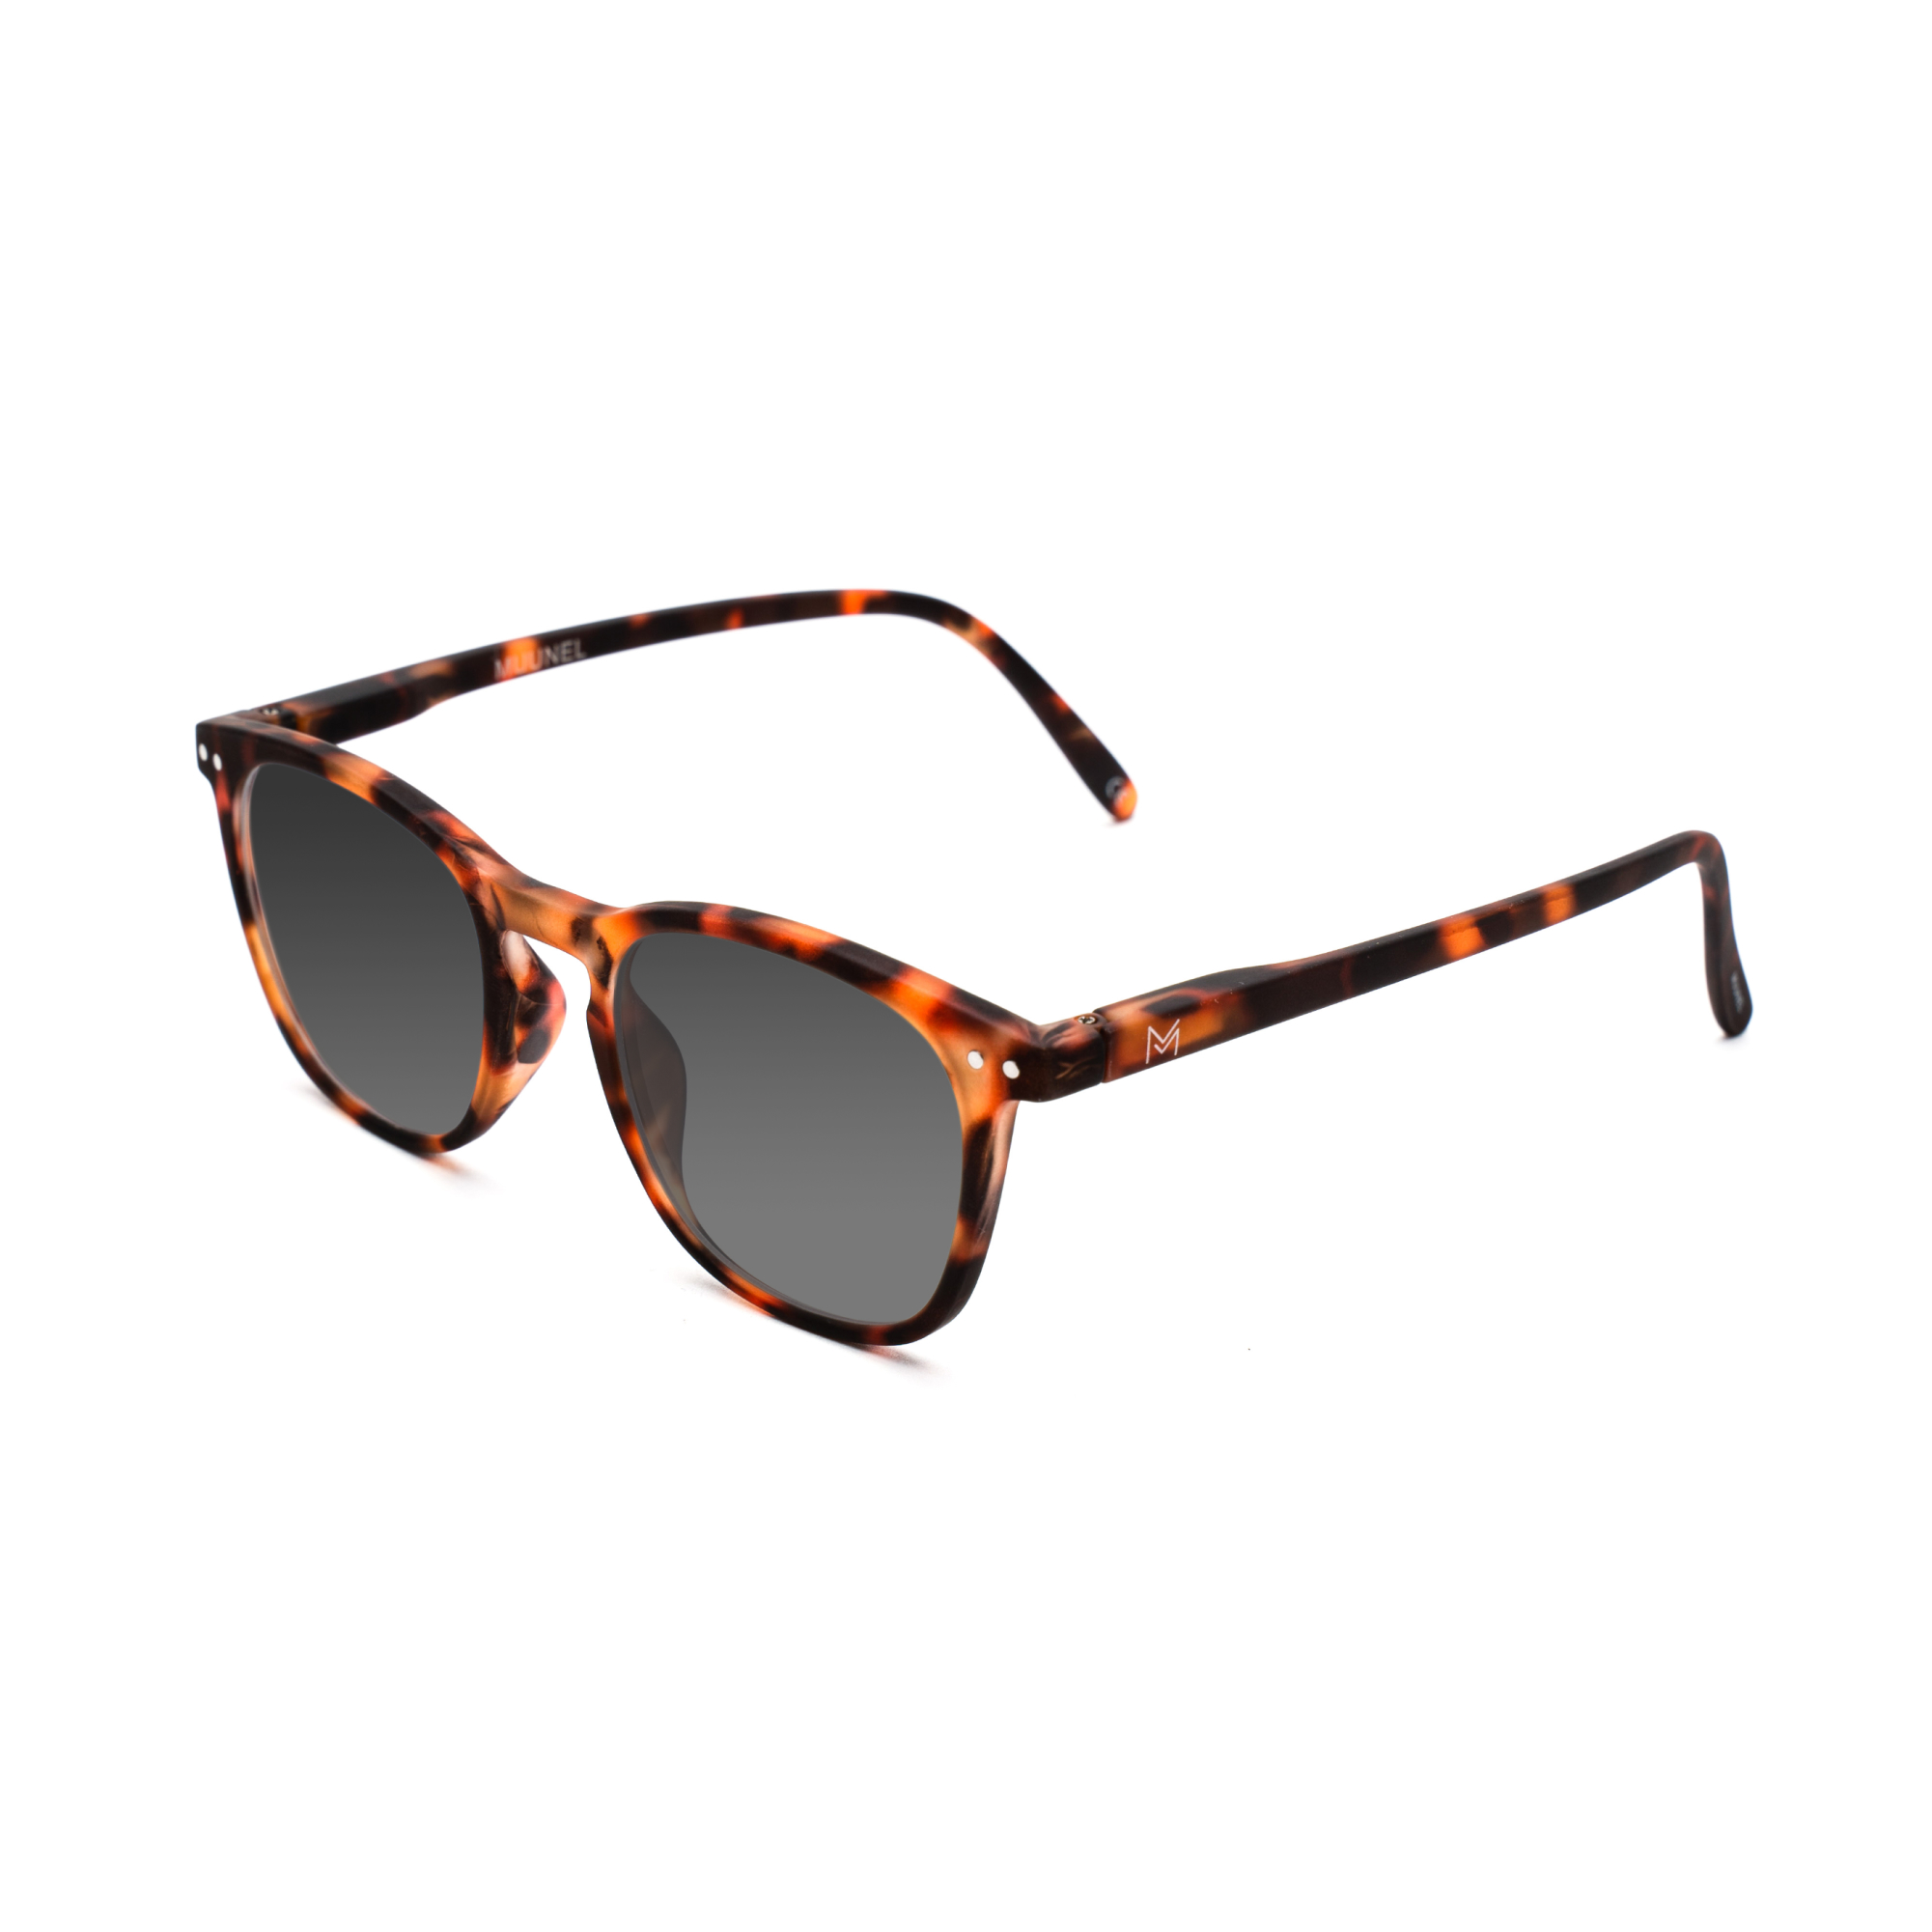 women's polarized sunglasses – William Polarised SUN w - Tortoise